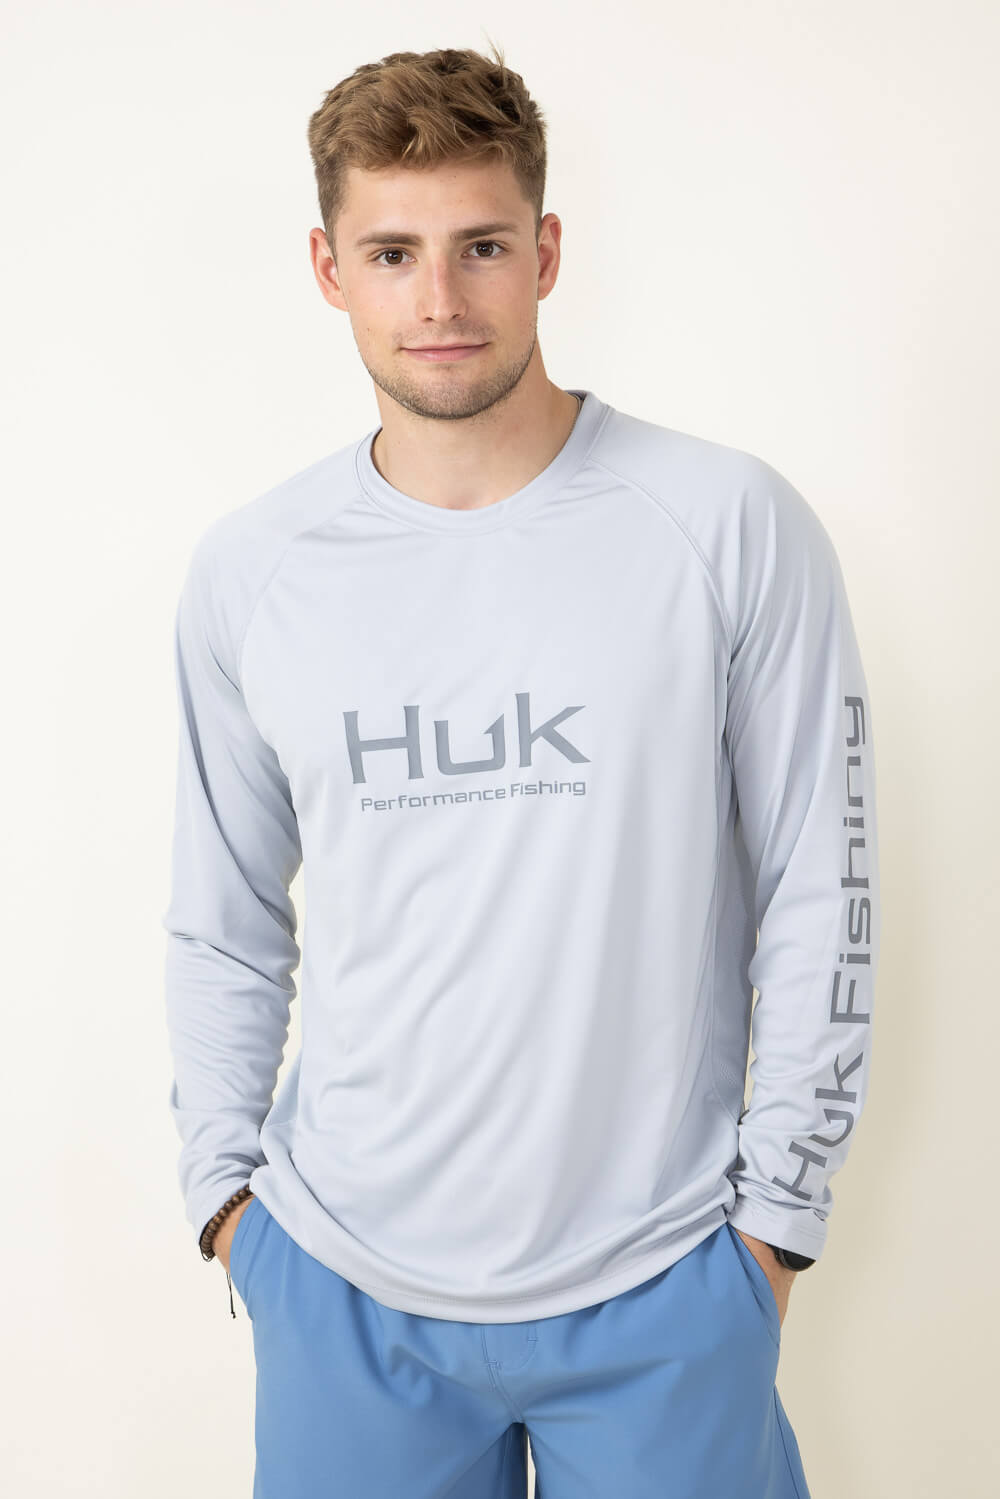 Men's HUK Fishing Shirt Gray Camo (White and Blue)